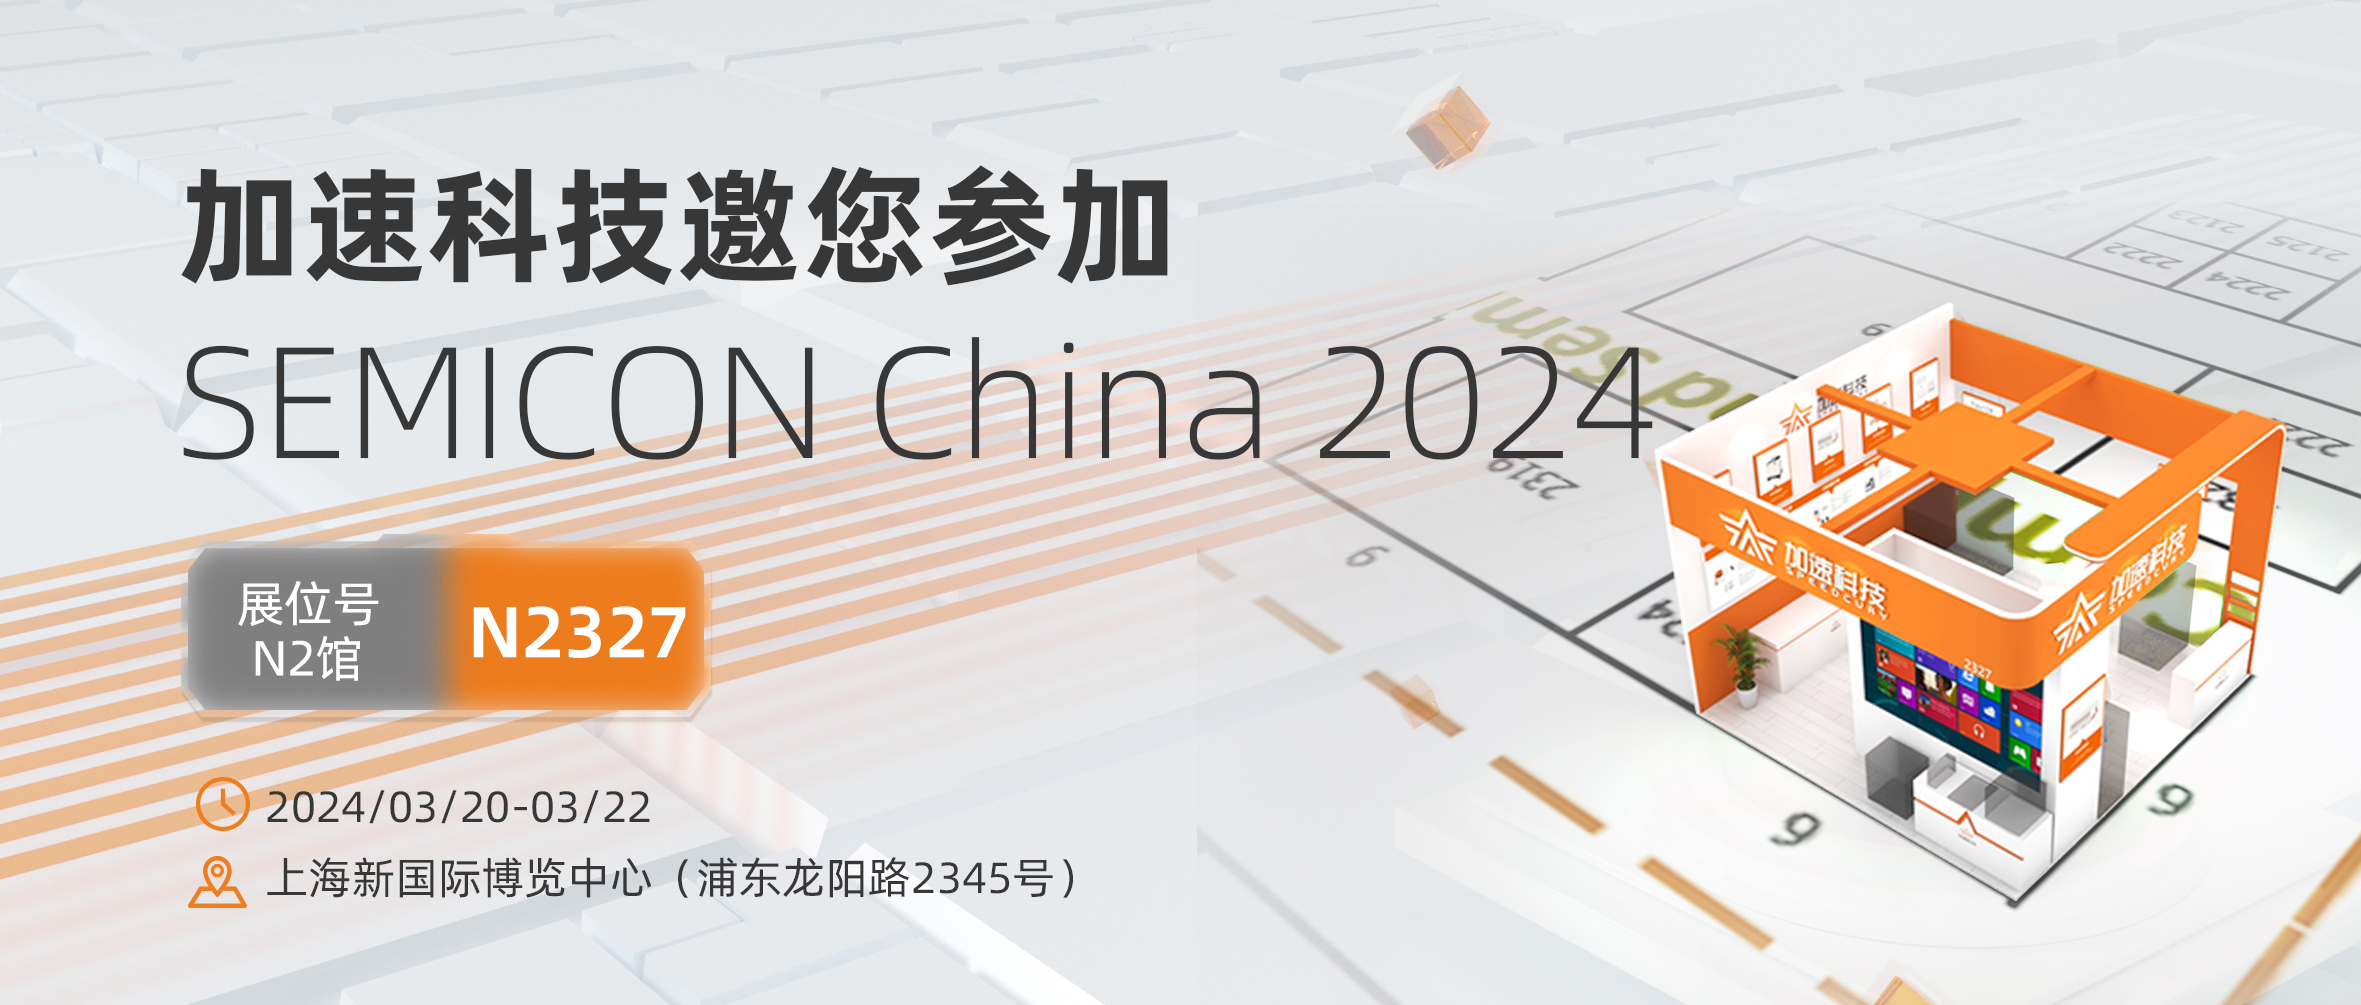 展会邀约 | 加速科技将携重磅产品亮相SEMICON China 2024